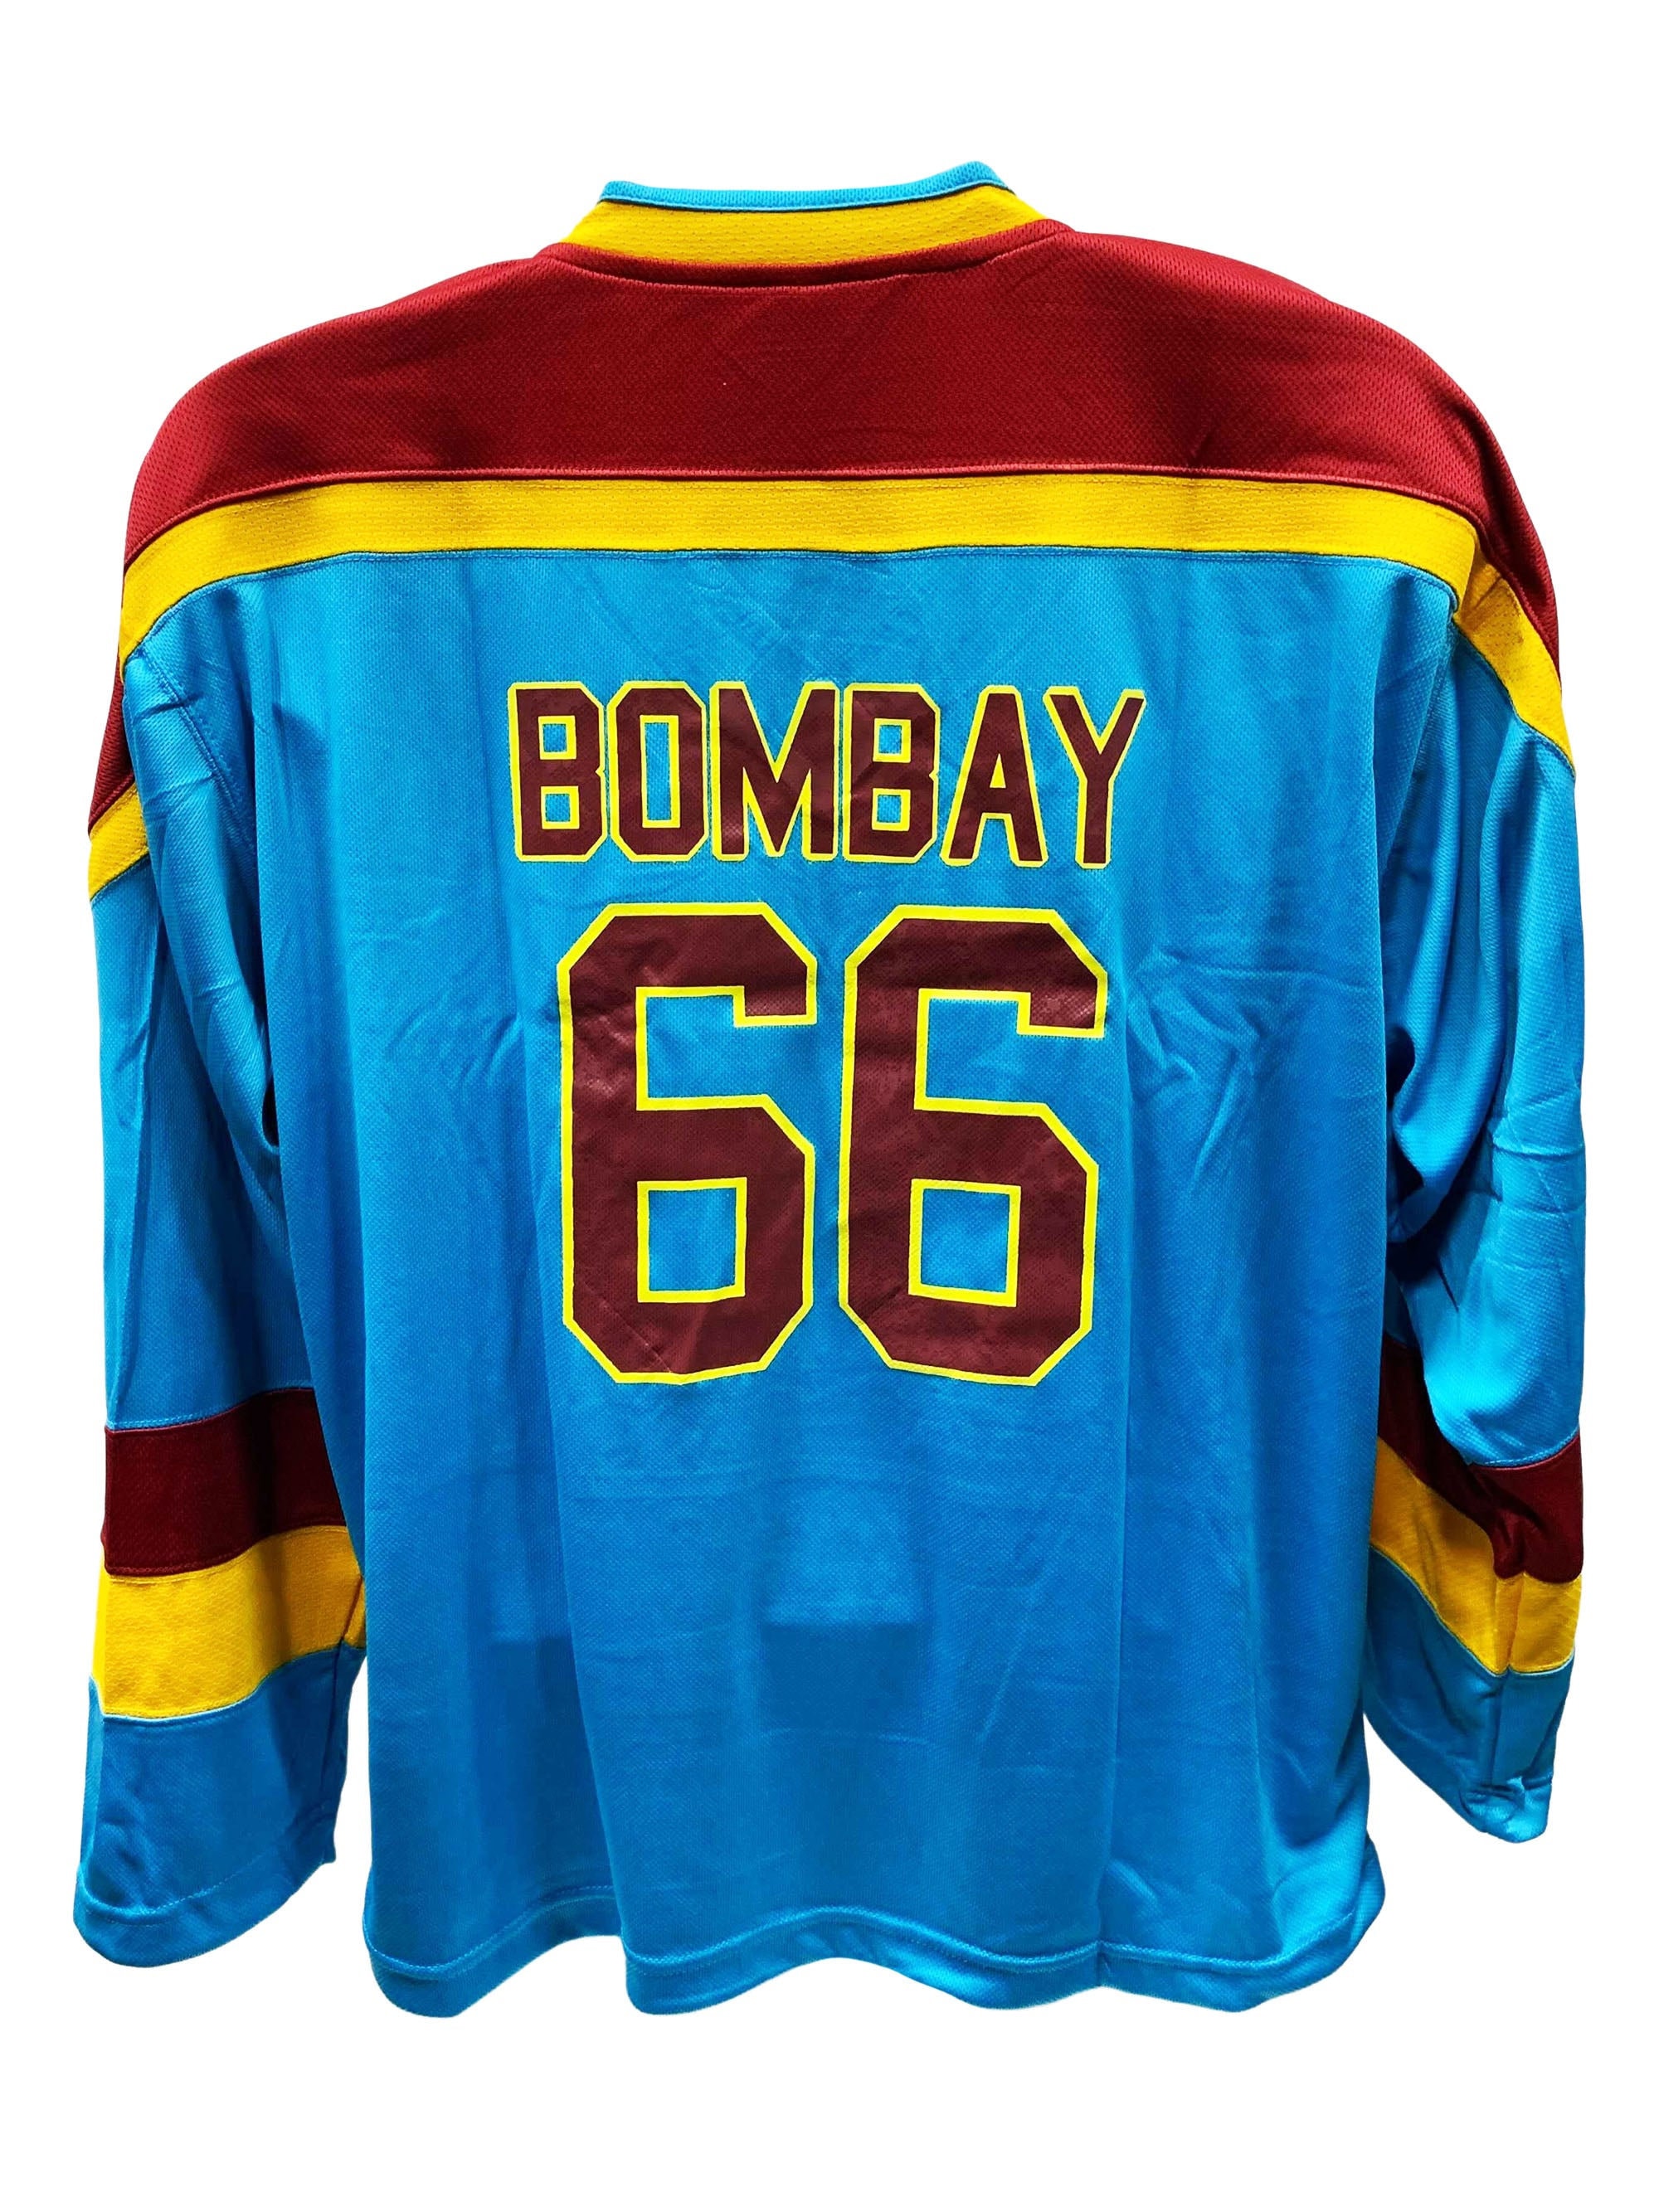 Gordon Bombay #66 Waves Hockey Jersey Mighty Ducks Movie Minnehaha Uniform  Gift